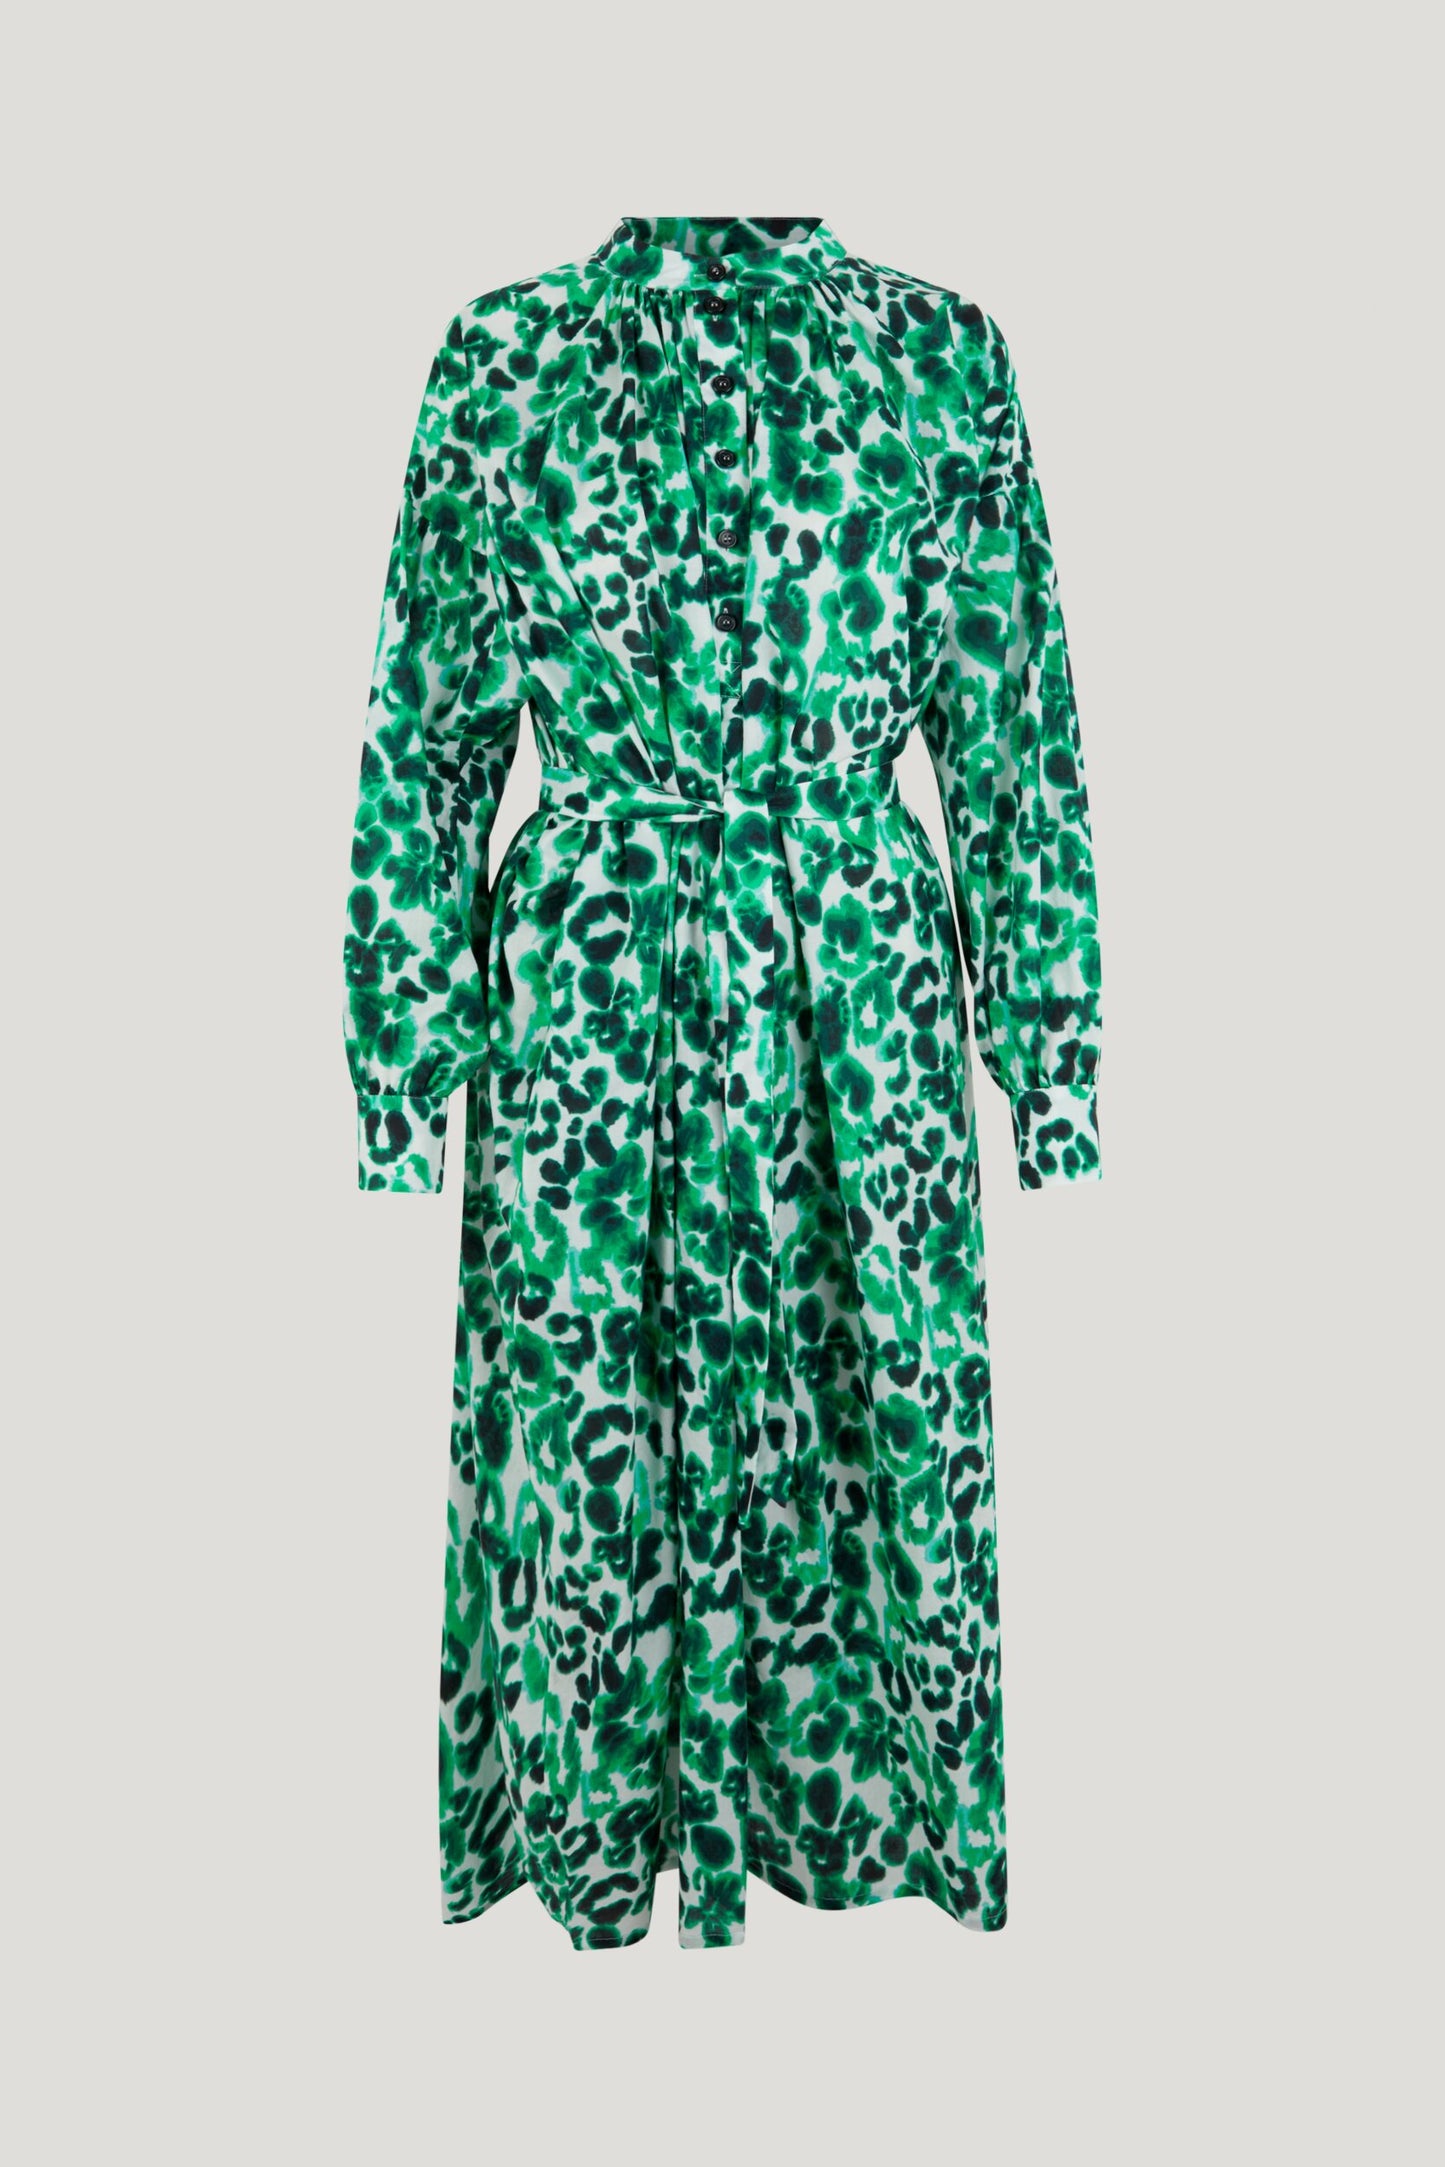 Abilene Dress by Baum und Pferdgarten